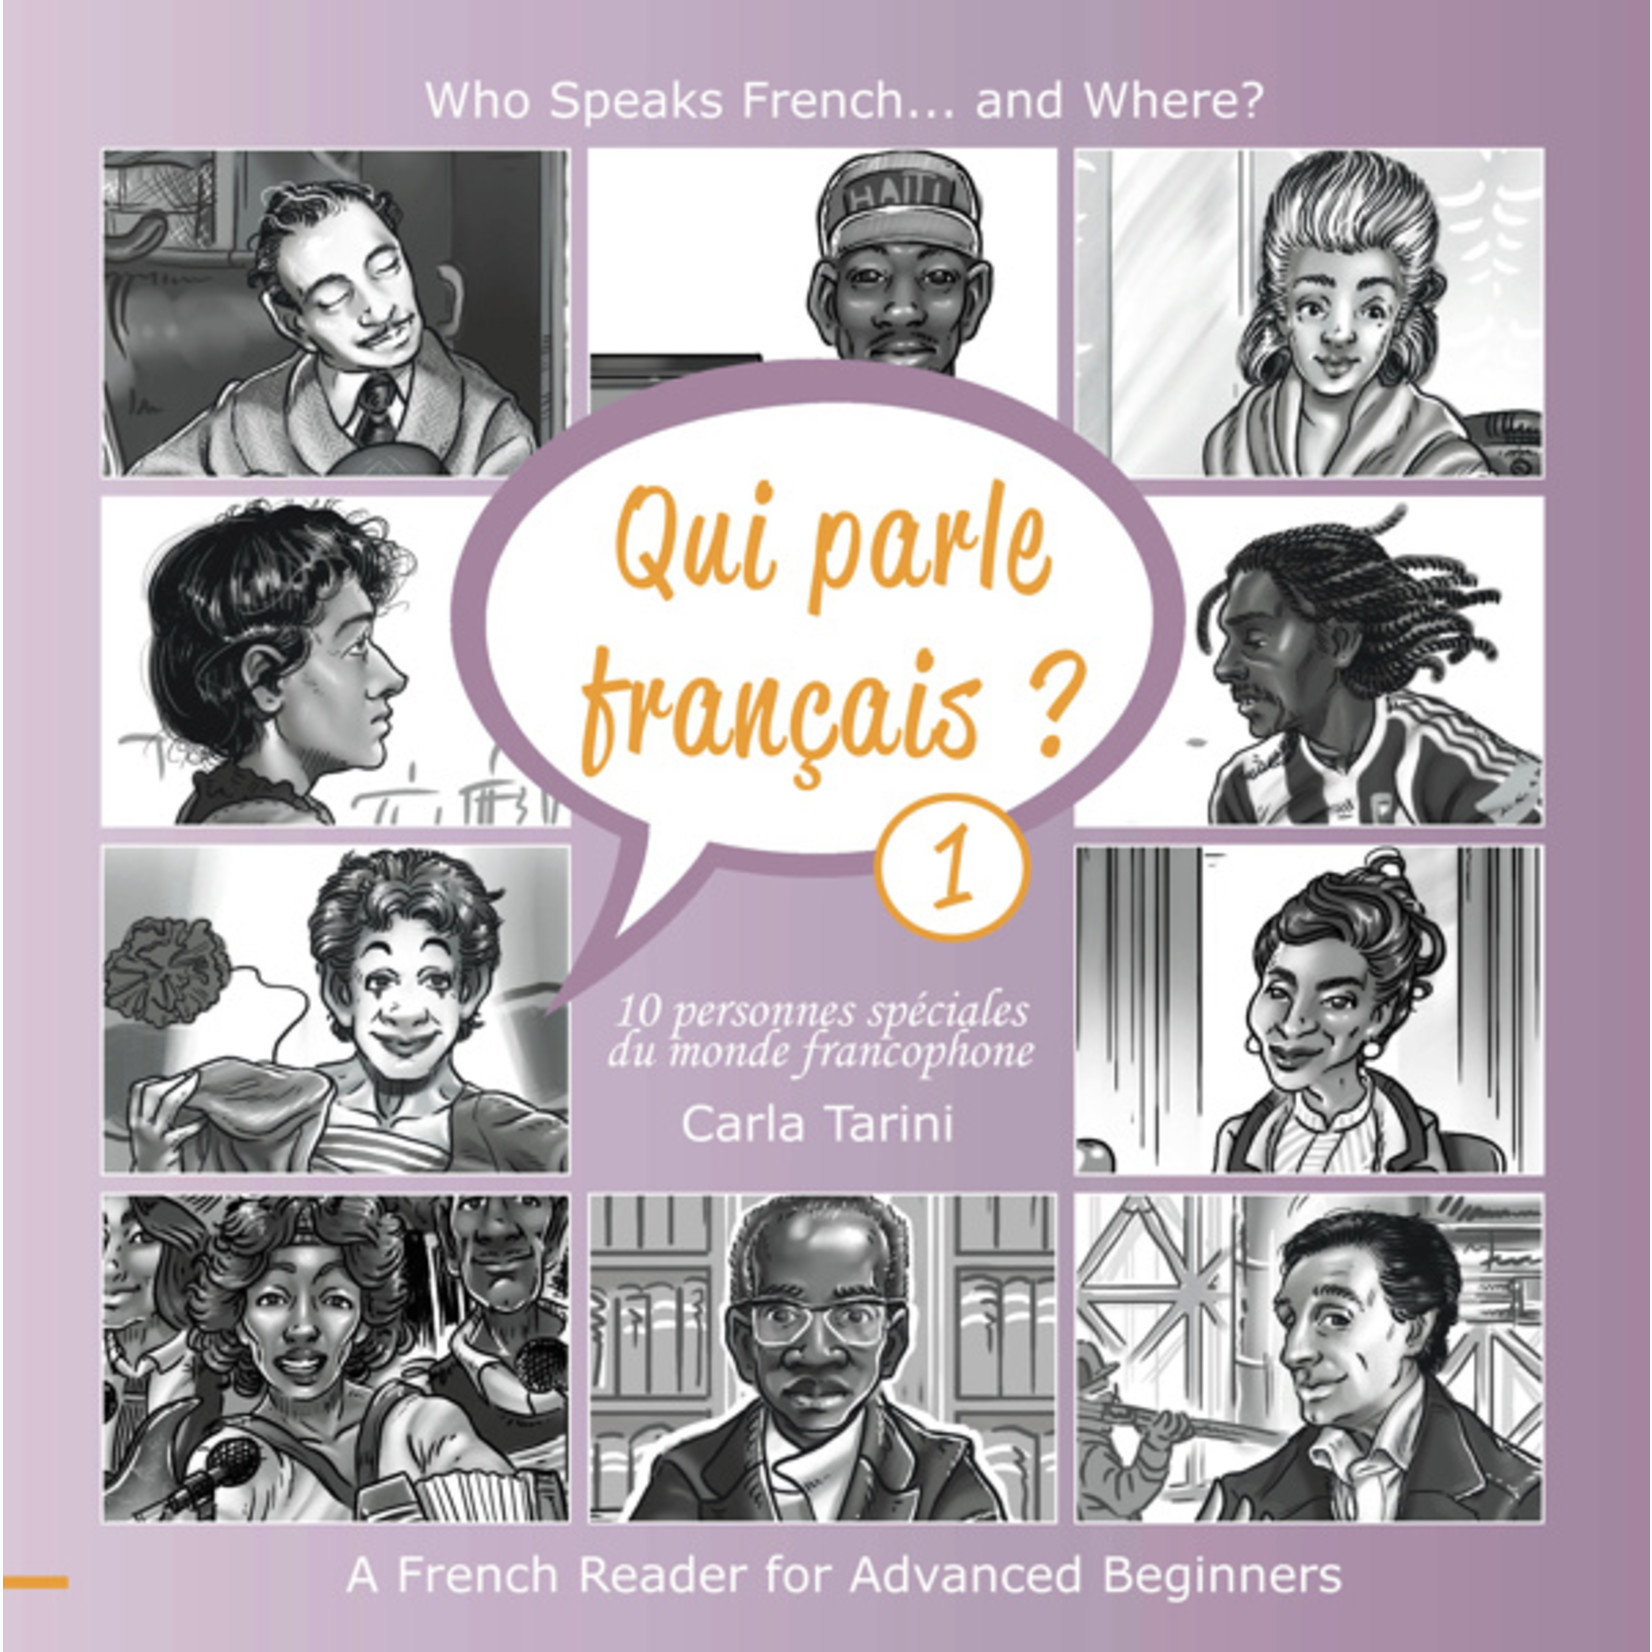 Arcos Publishers Qui parle français ? (Frans-Engels) - Livre 1